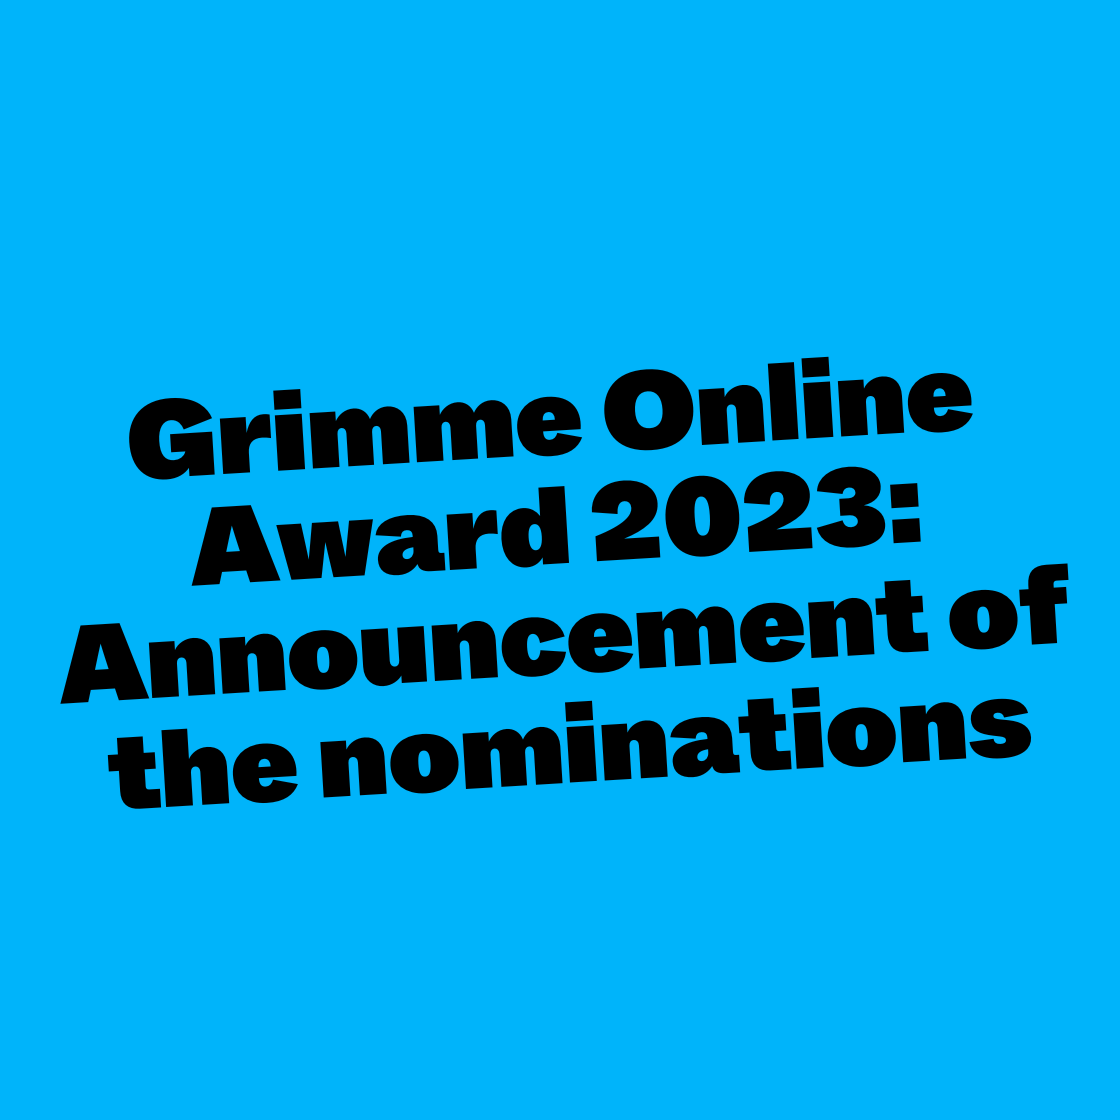 Grimme Online Award 2023: